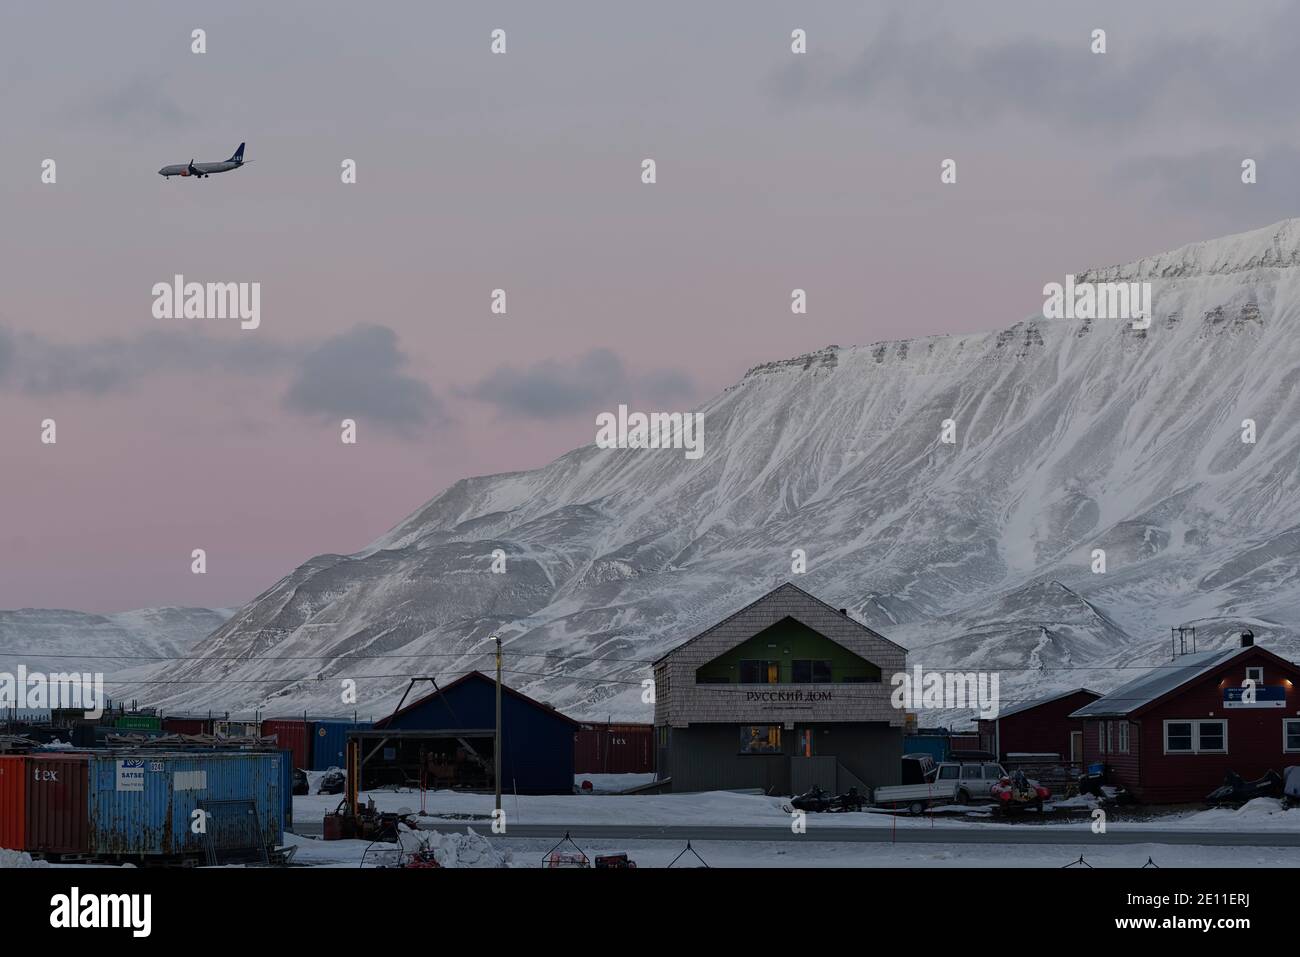 Saison sombre sur Svalbard. Crépuscule en février à Longyearbyen, Spitsbergen, Svalbard, Norvège Banque D'Images